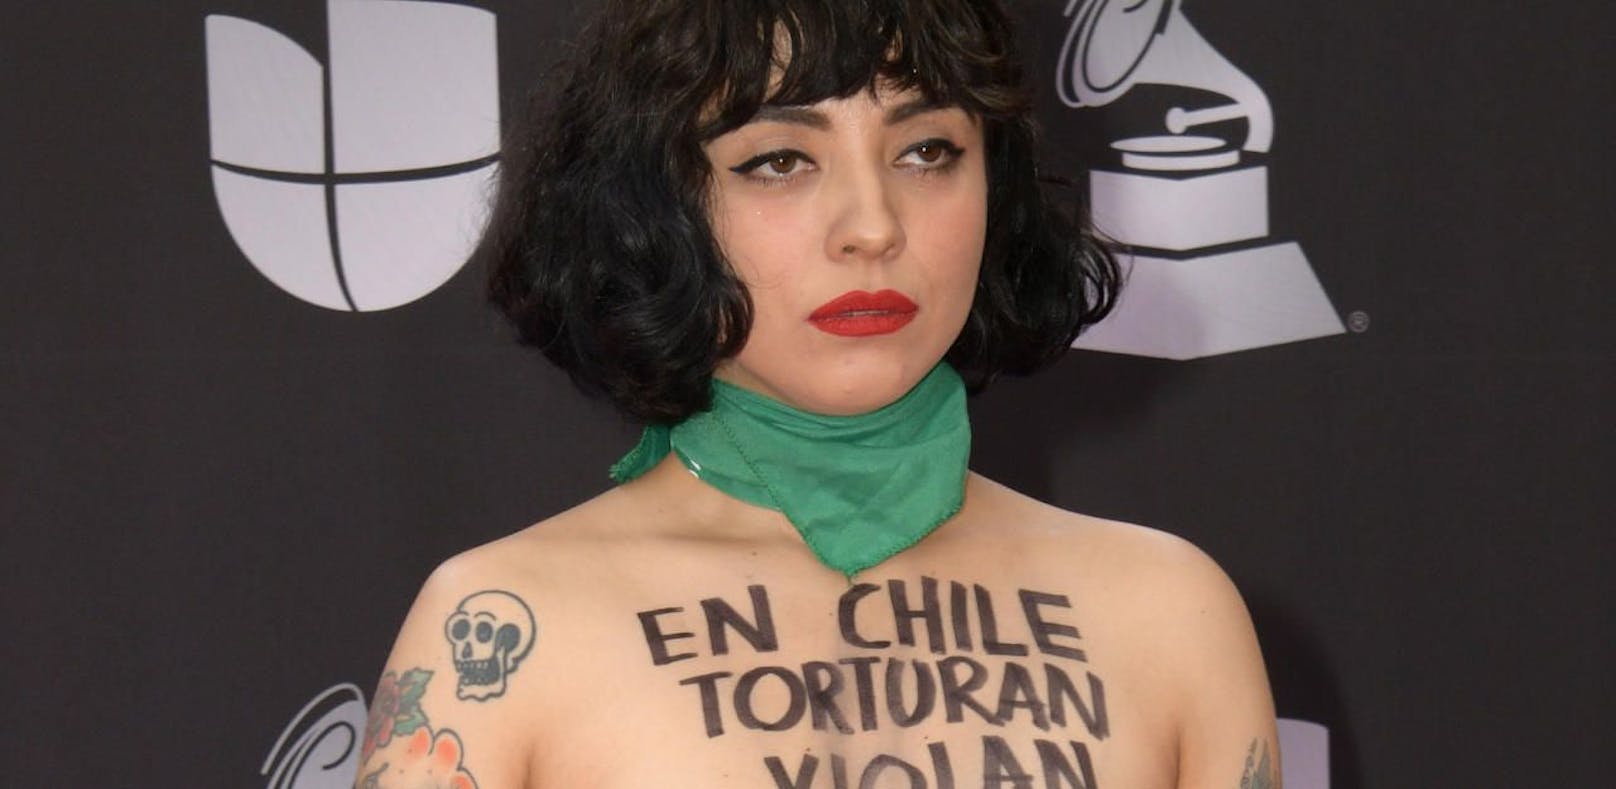 Aus Protest: Latino-Sängerin zieht bei Grammy-Show b...